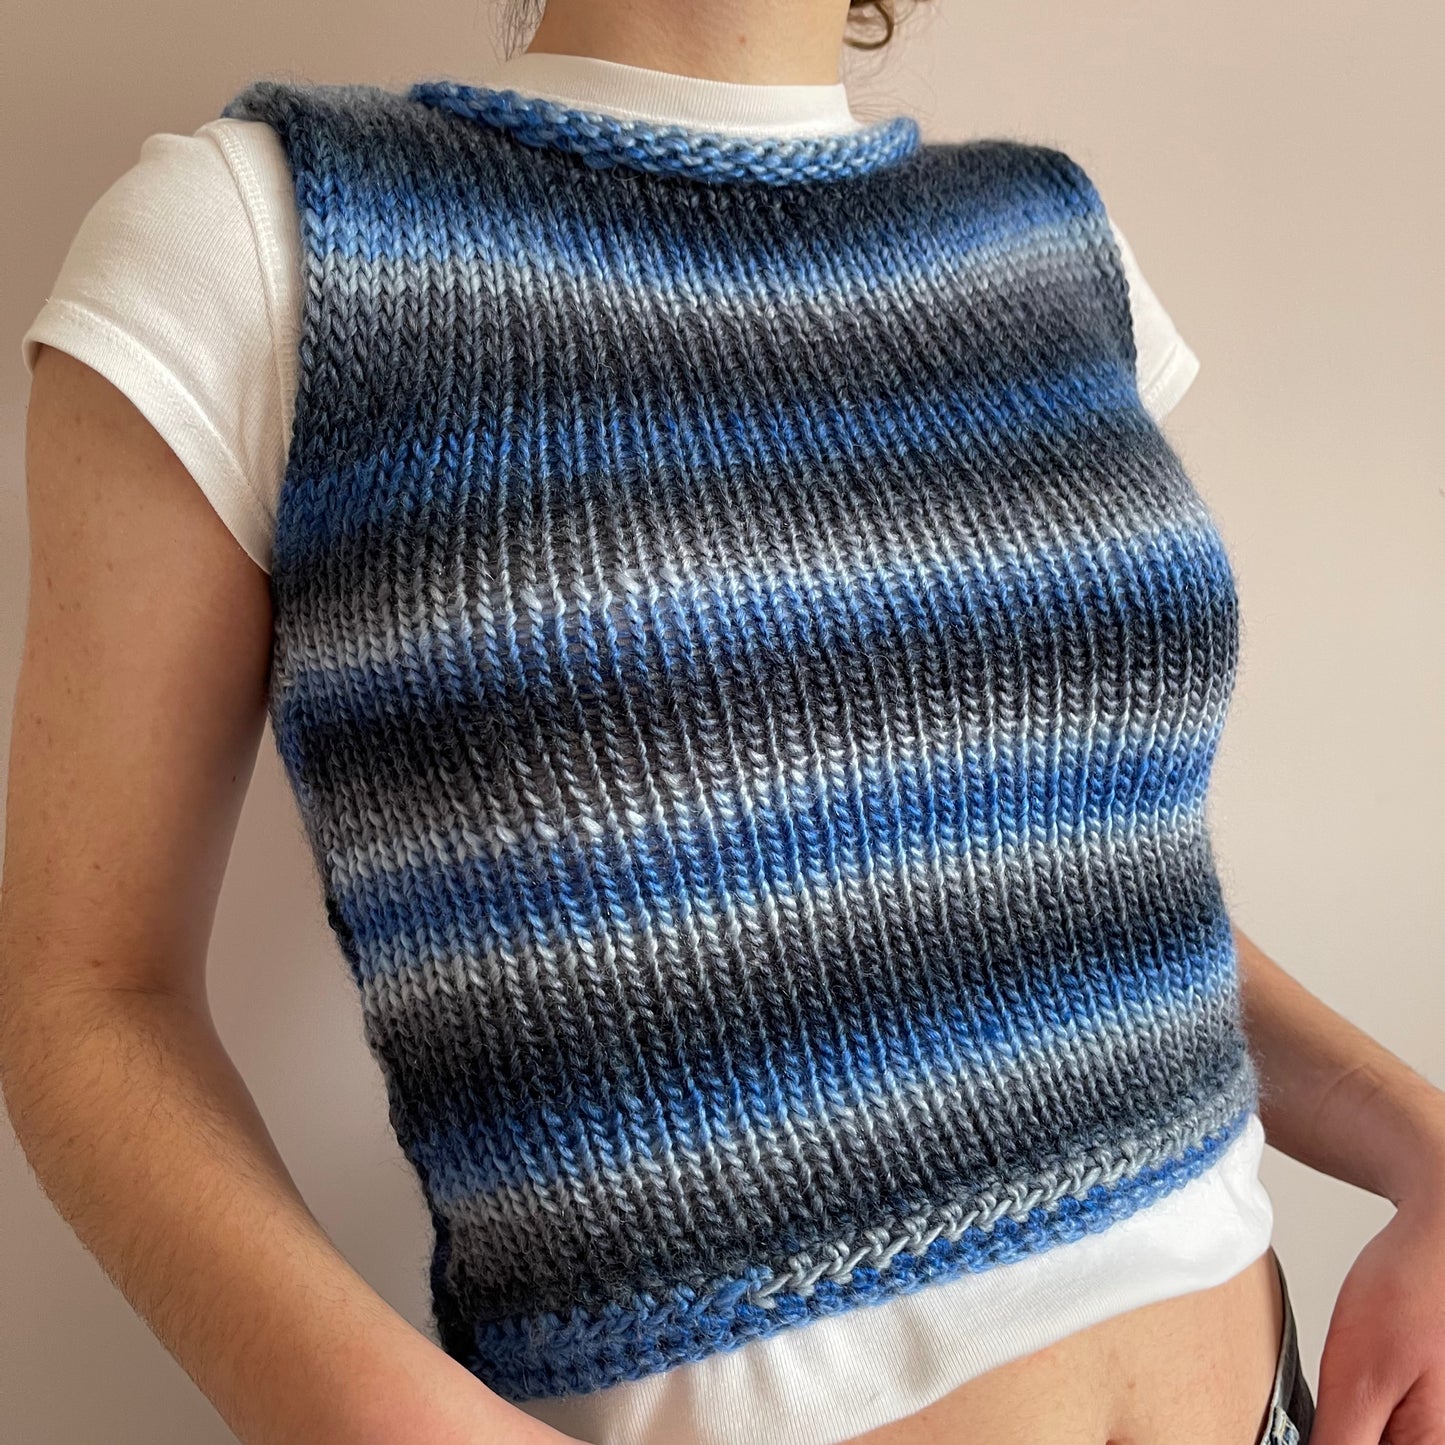 The Blue Daze Vest - handmade knitted sweater vest